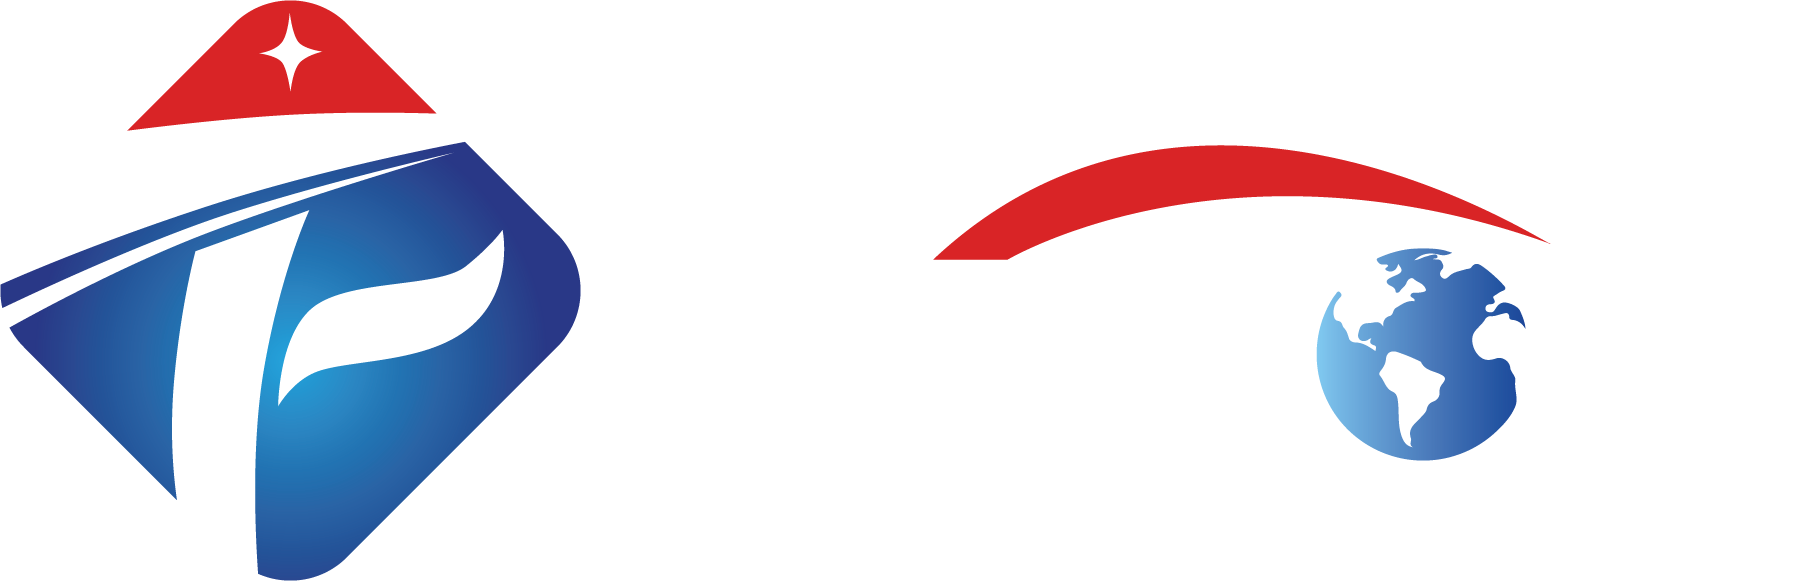 Fibos Measurement Technology (CHANGZHOU) Co., Ltd